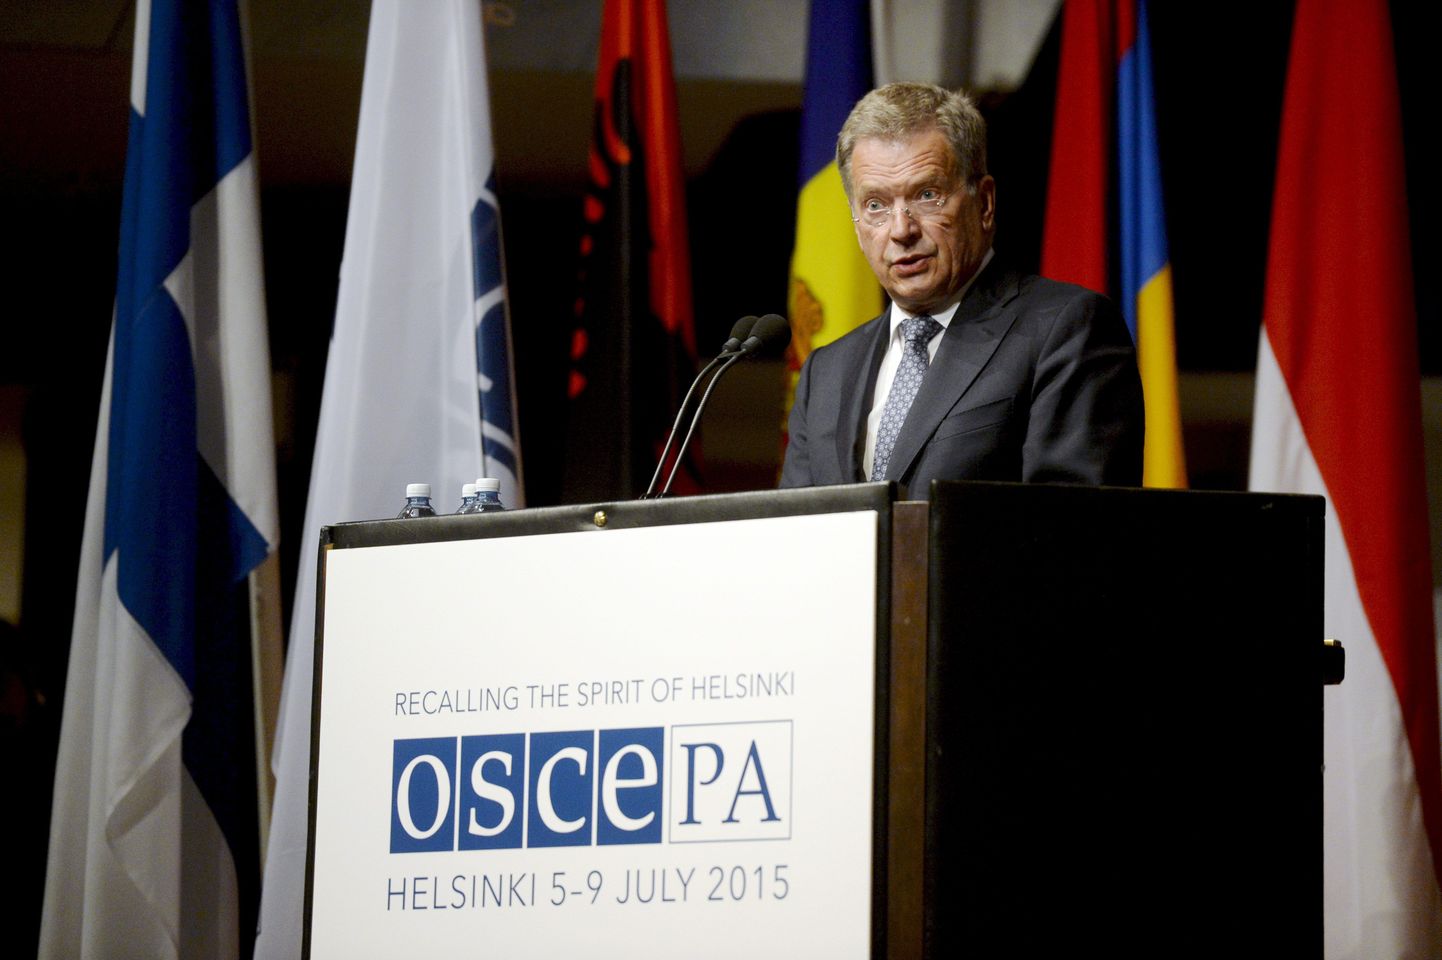 Sauli Niinistö kõnelemas OSCE PA avamisel